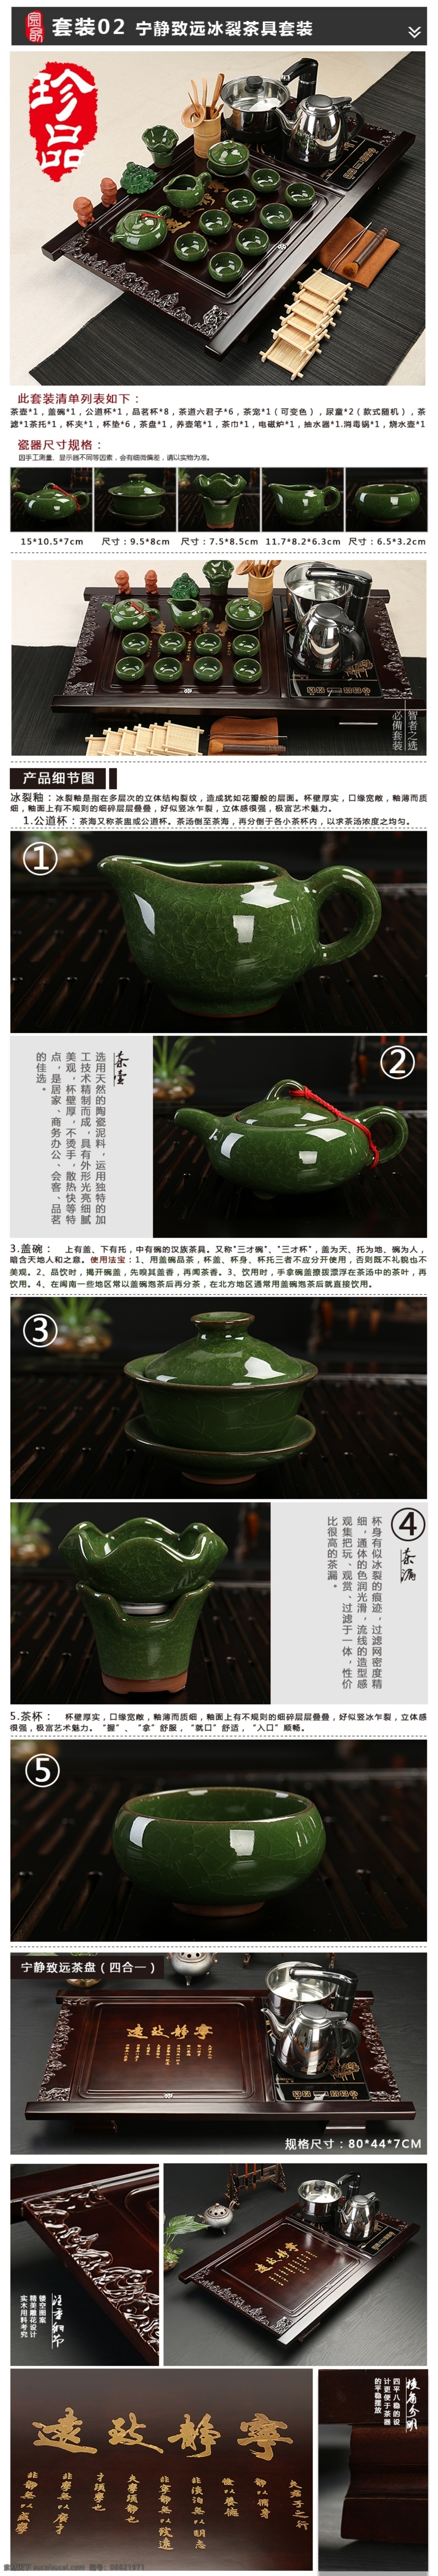 天猫 茶具 详情 页 源文件 传统文化 模板 原创设计 原创淘宝设计